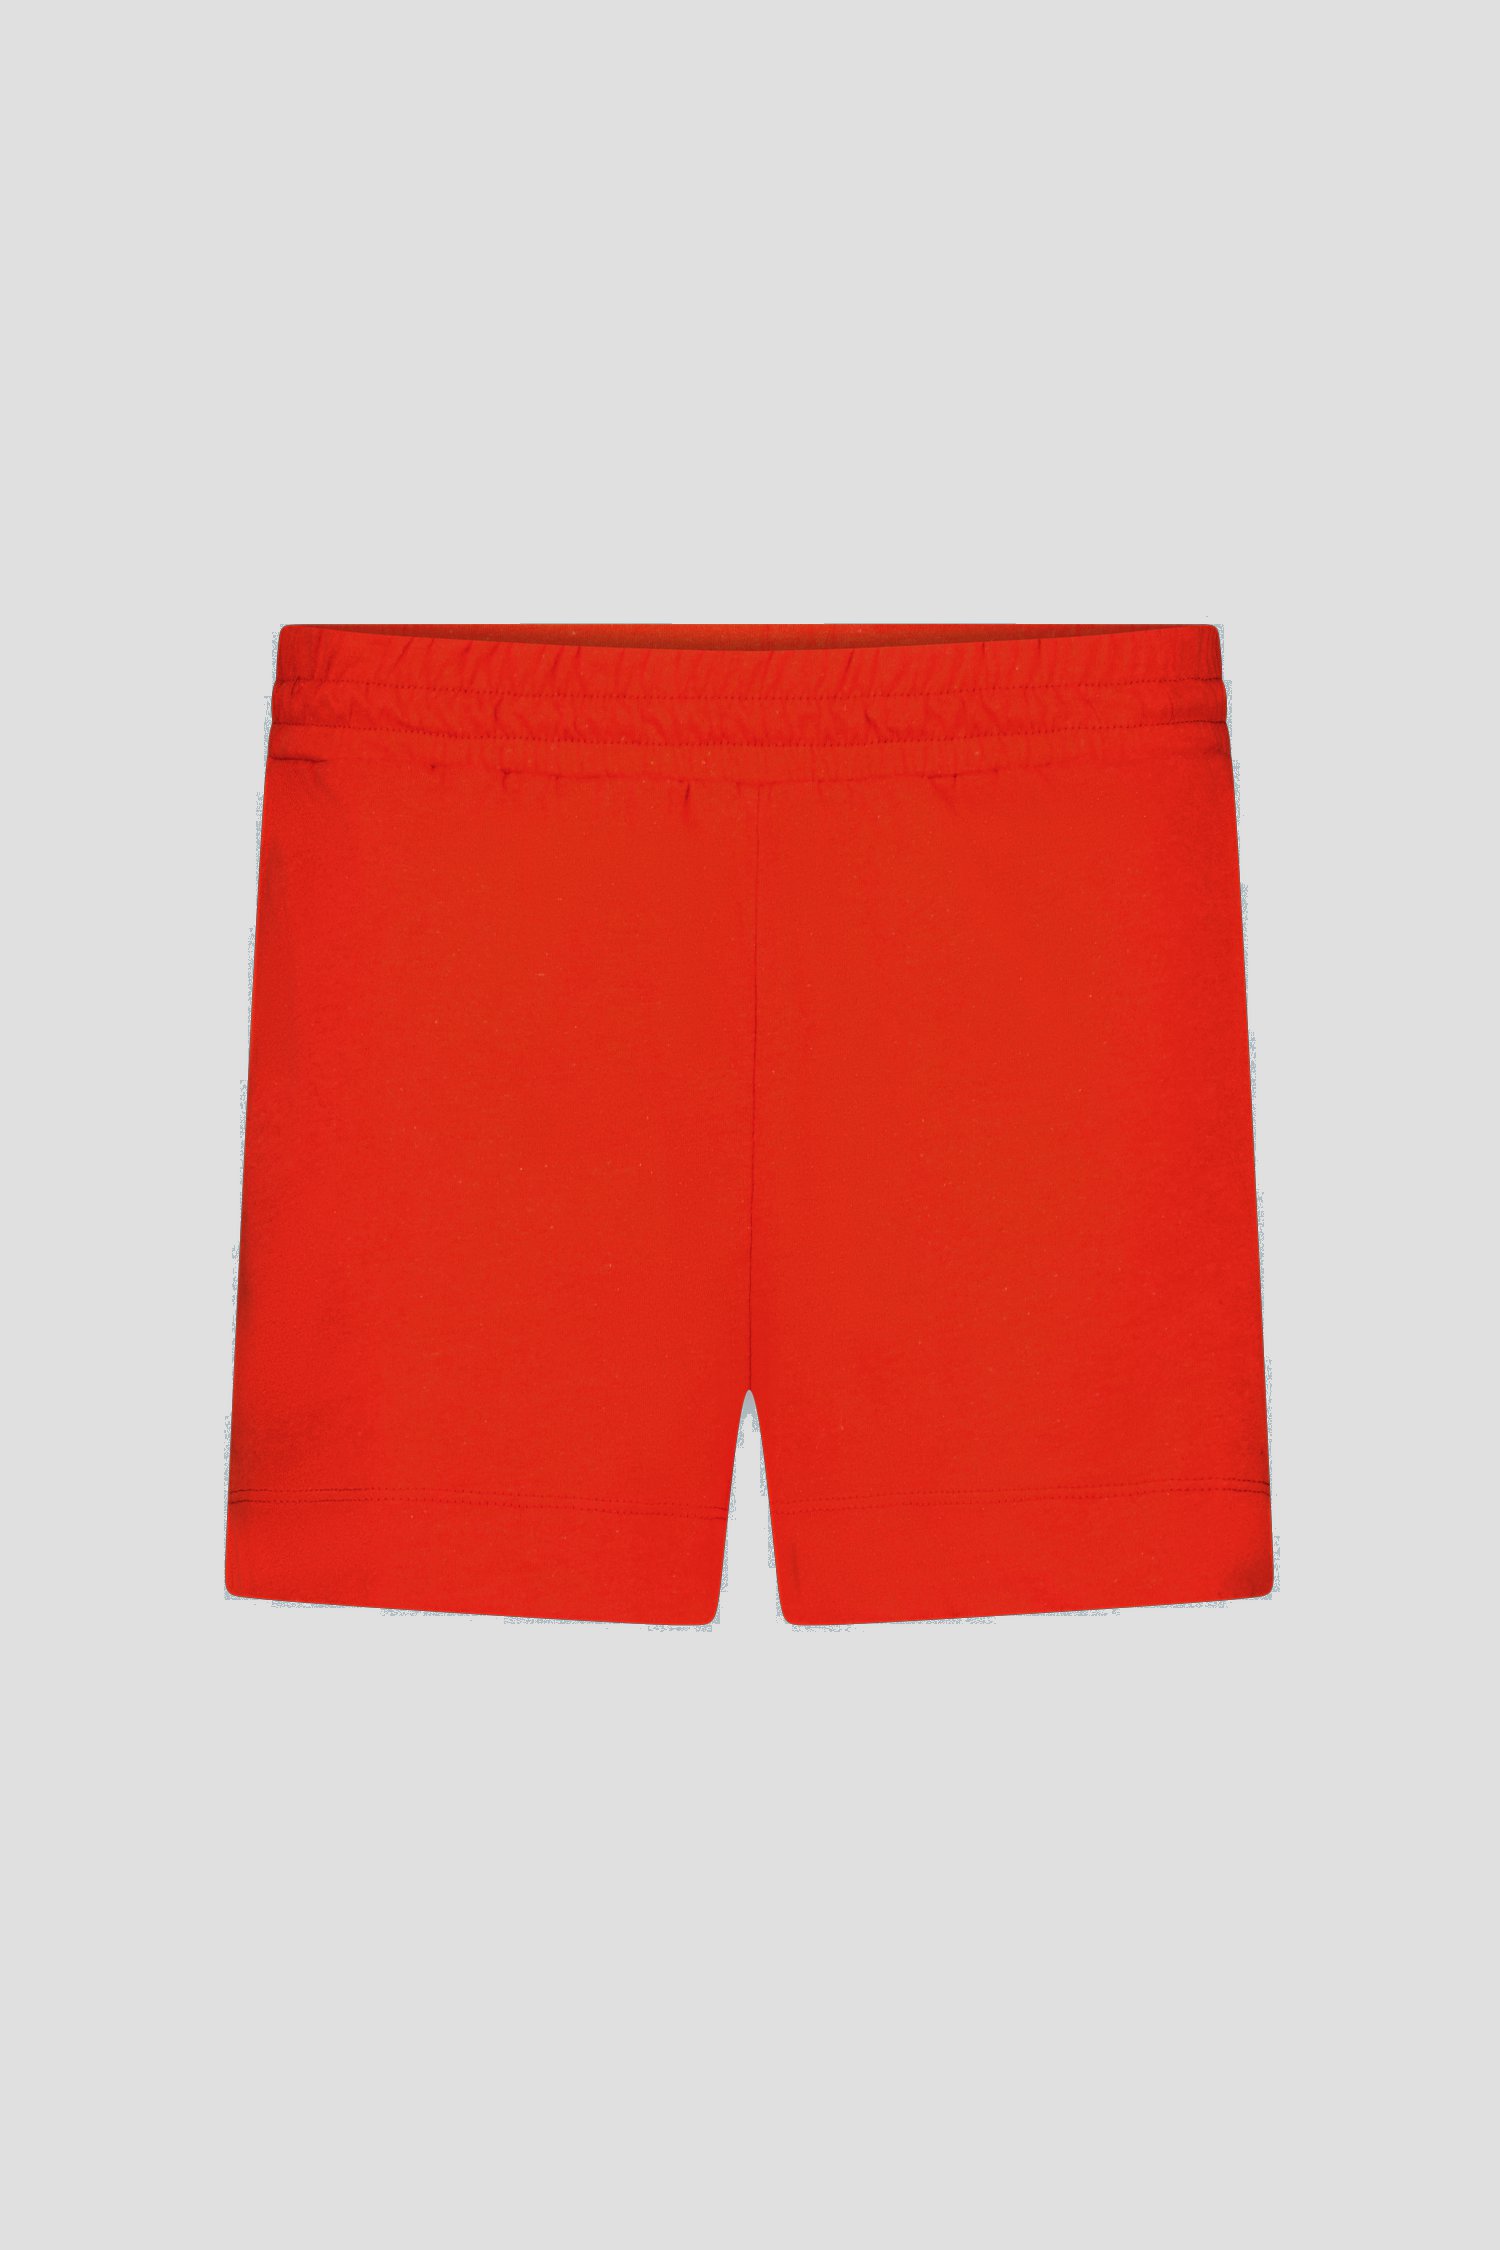 Korte short in oranje-rood van Liberty Island voor Dames